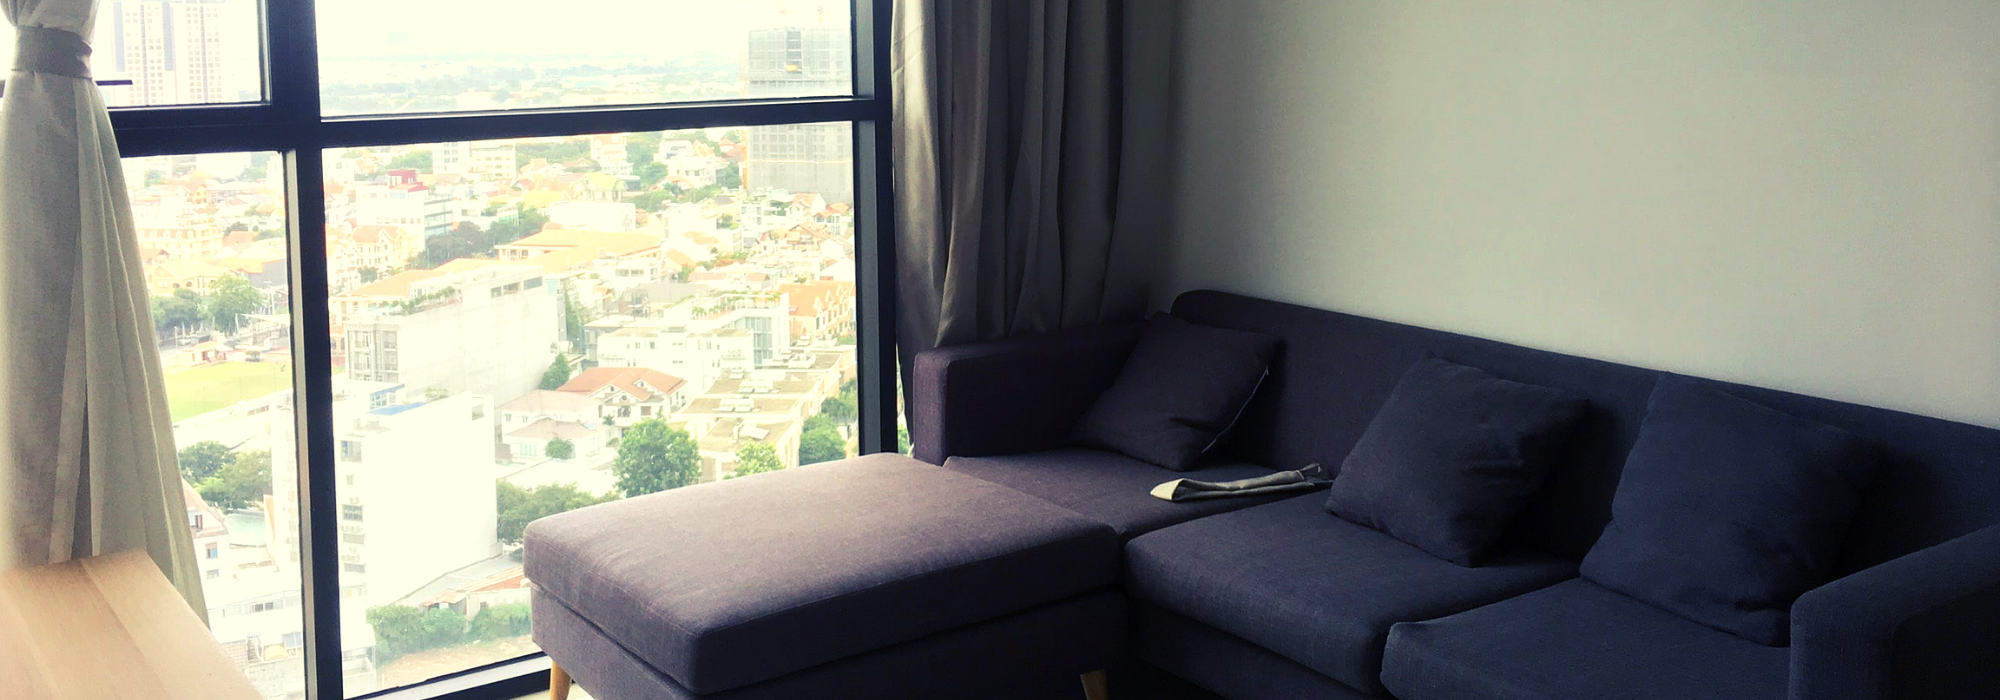 The AScent Thảo Điền – căn hộ 2 phòng ngủ thiết kế đẹp